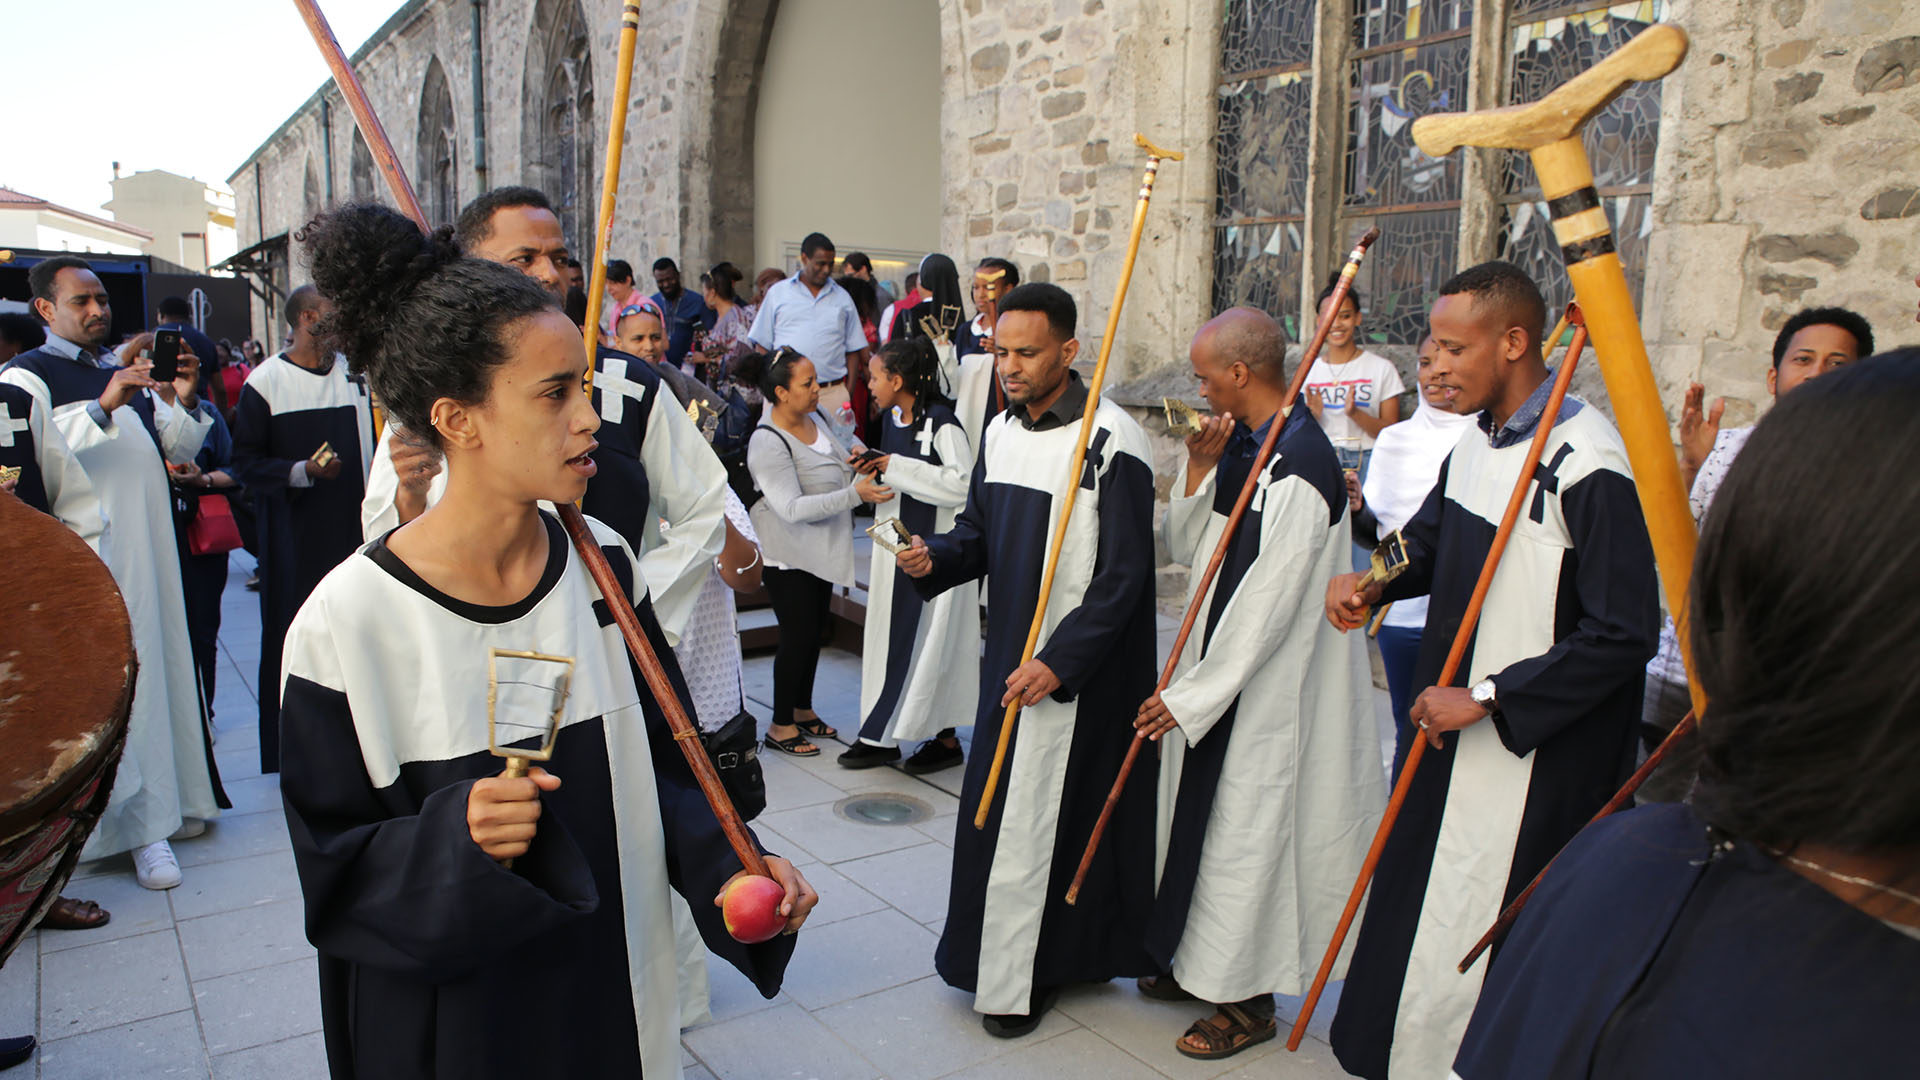 Saint-Maurice le 2 juin 2019. La chorale érythréenne a rythmé le pèlerinage aux saints d'Afrique. | © B. Hallet